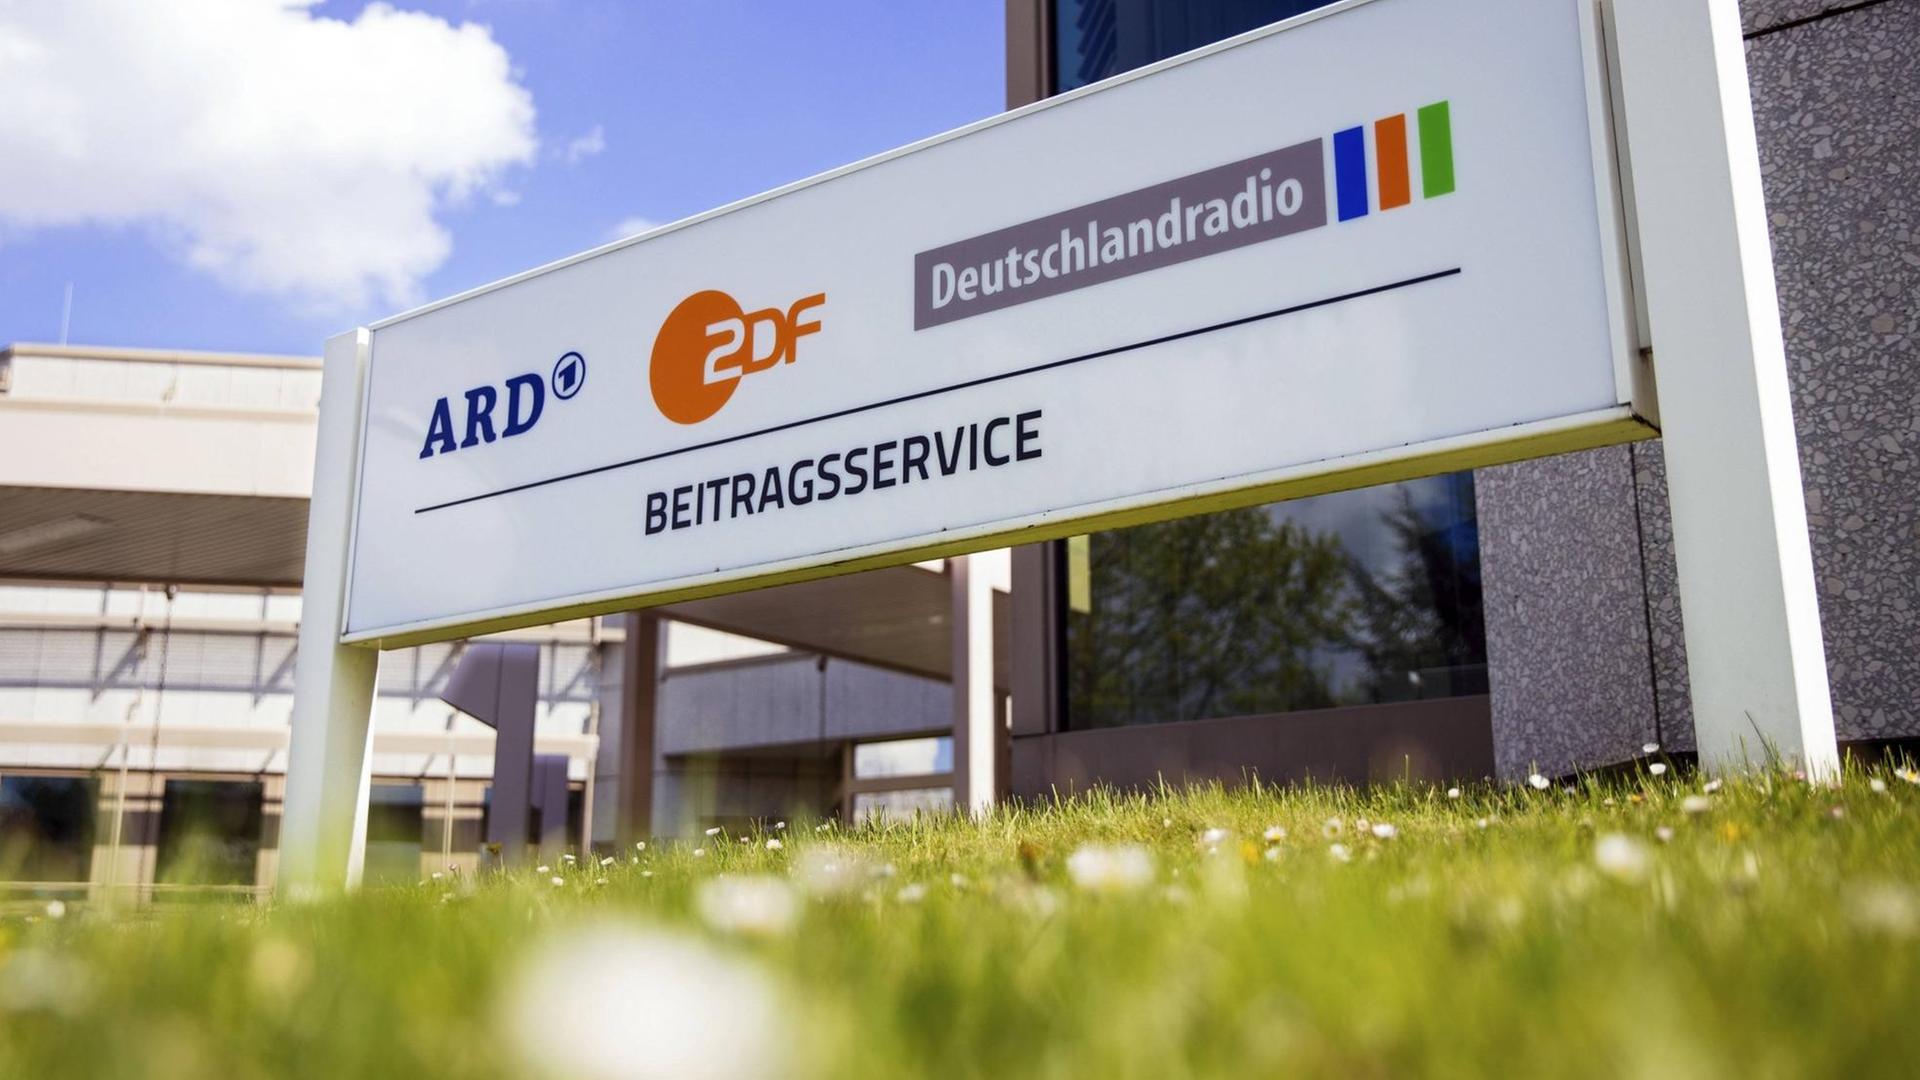 Der Beitragsservice von ARD, ZDF und Deutschlandradio in Köln-Bocklemünd